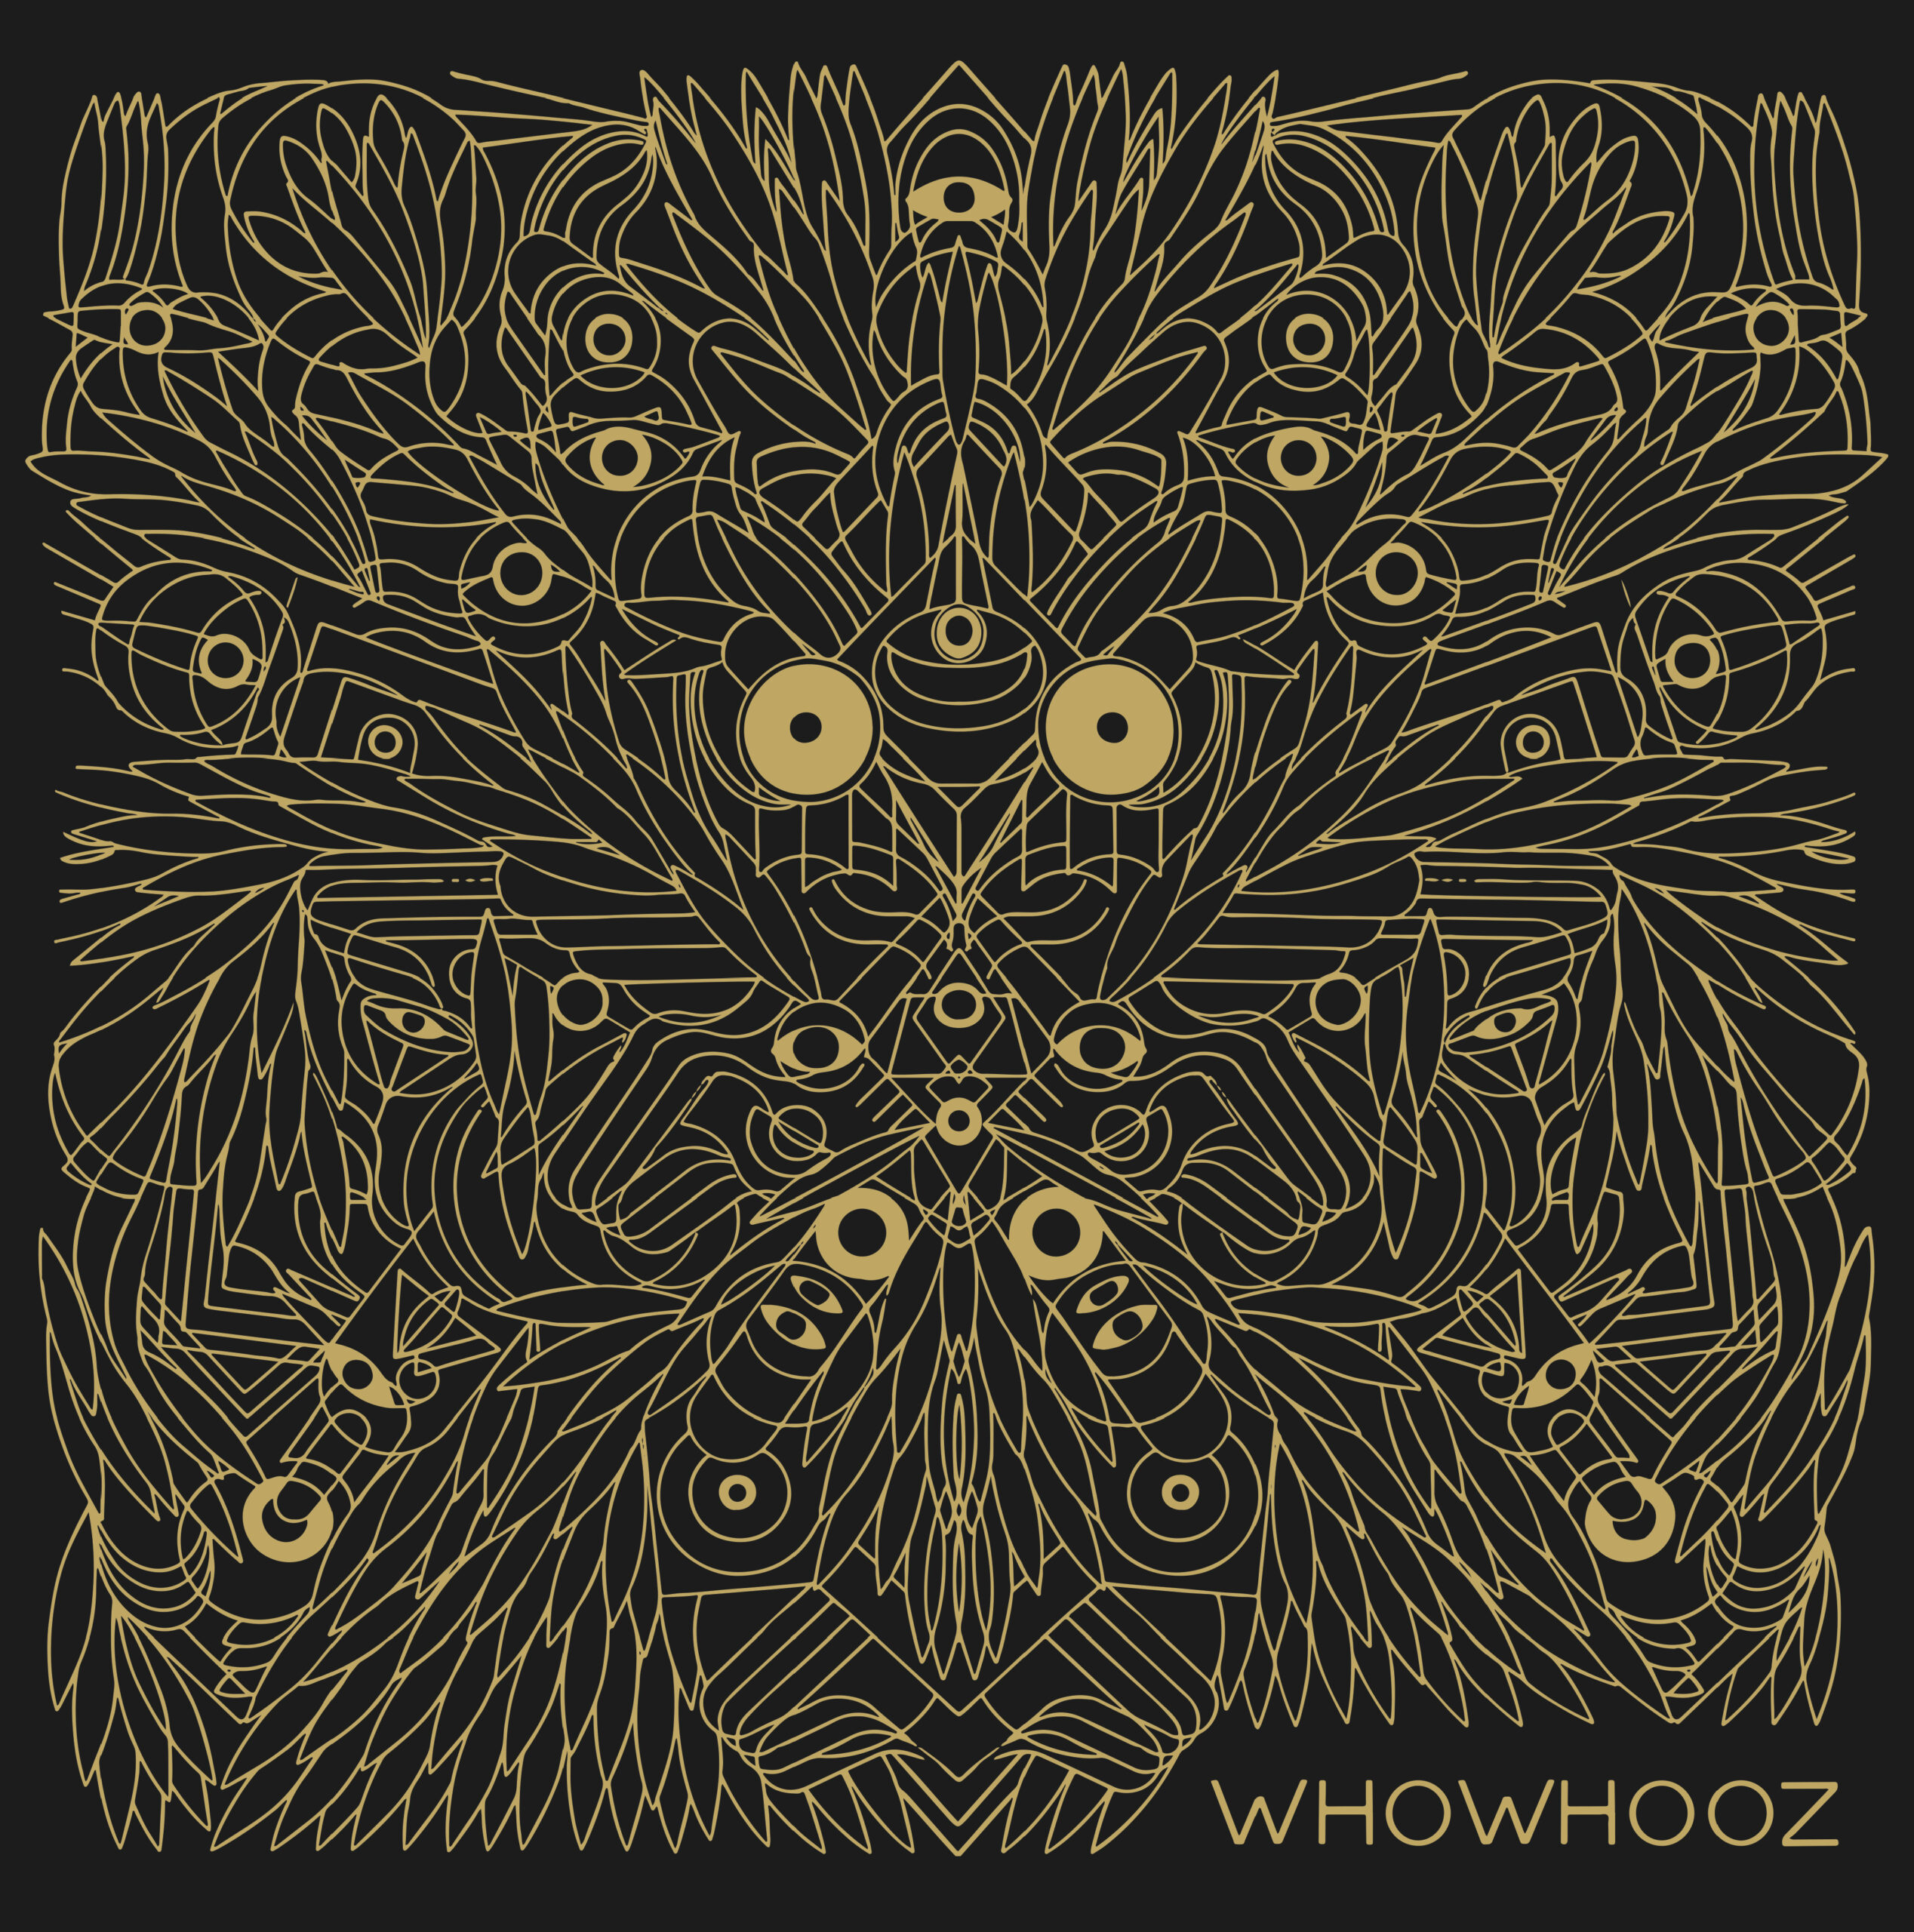 WHOWHOOZ veröffentlichen ihr Debüt